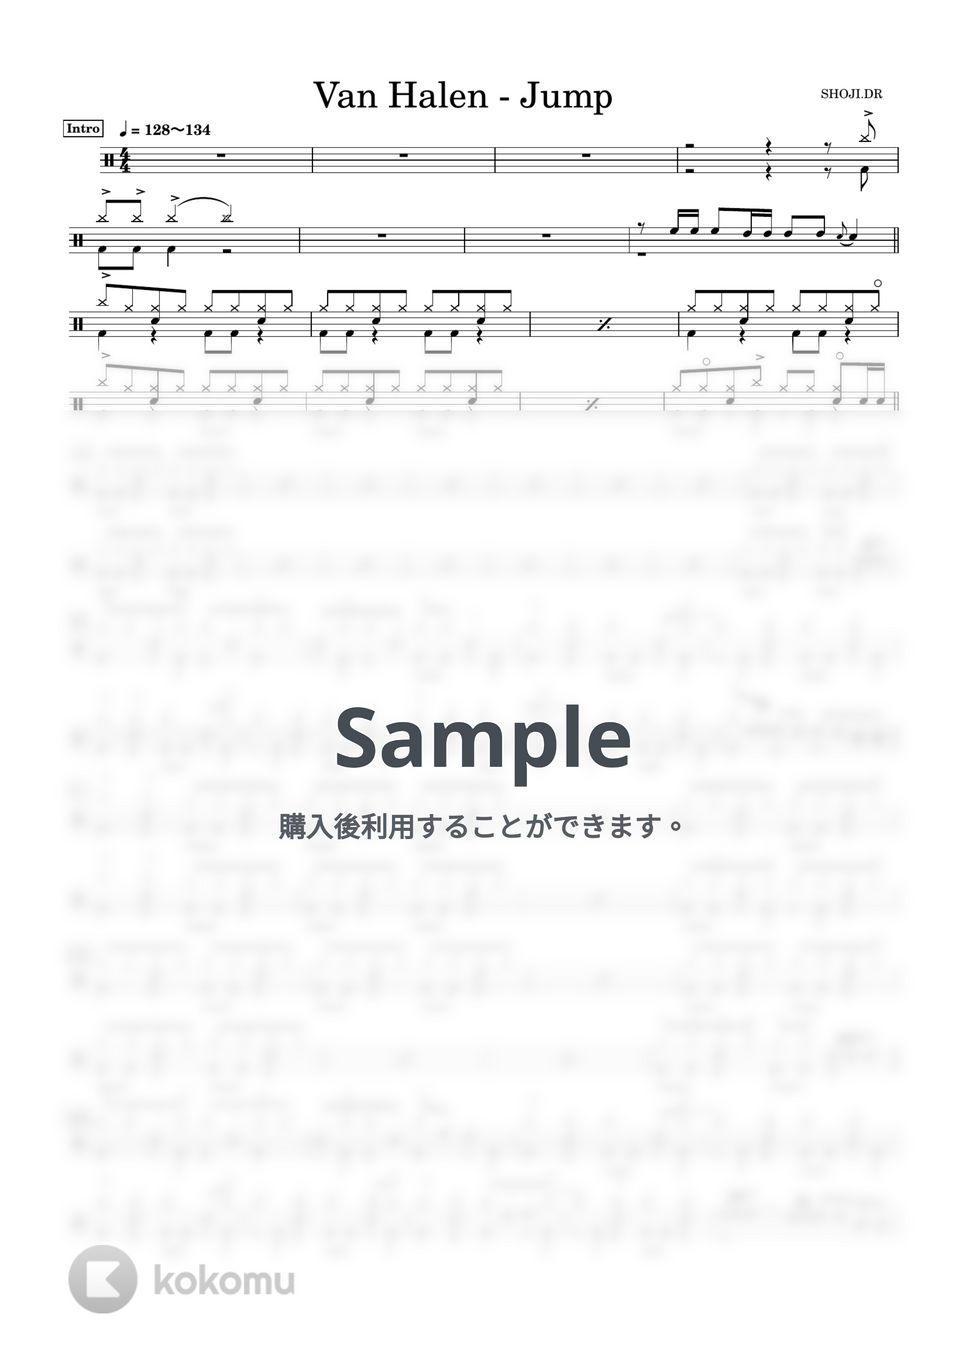 Van Halen - Jump (ほぼ完コピ！) by 吉村昇治